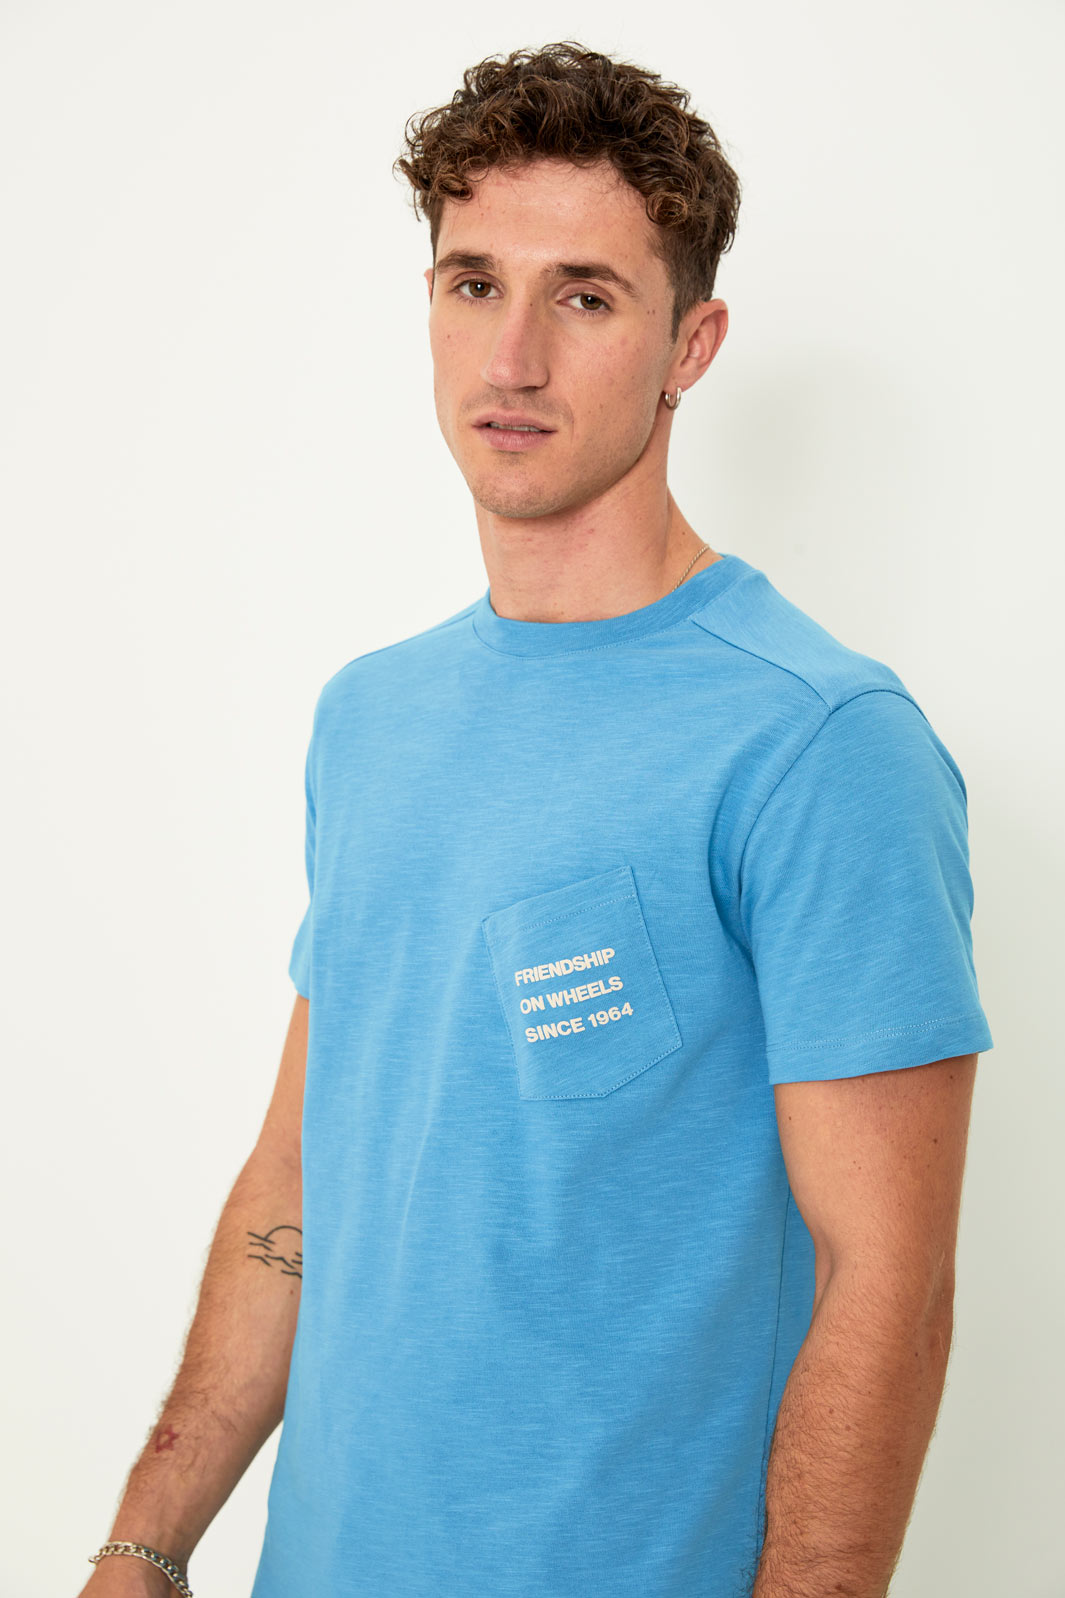 Friends pocket T-shirt (light blue)